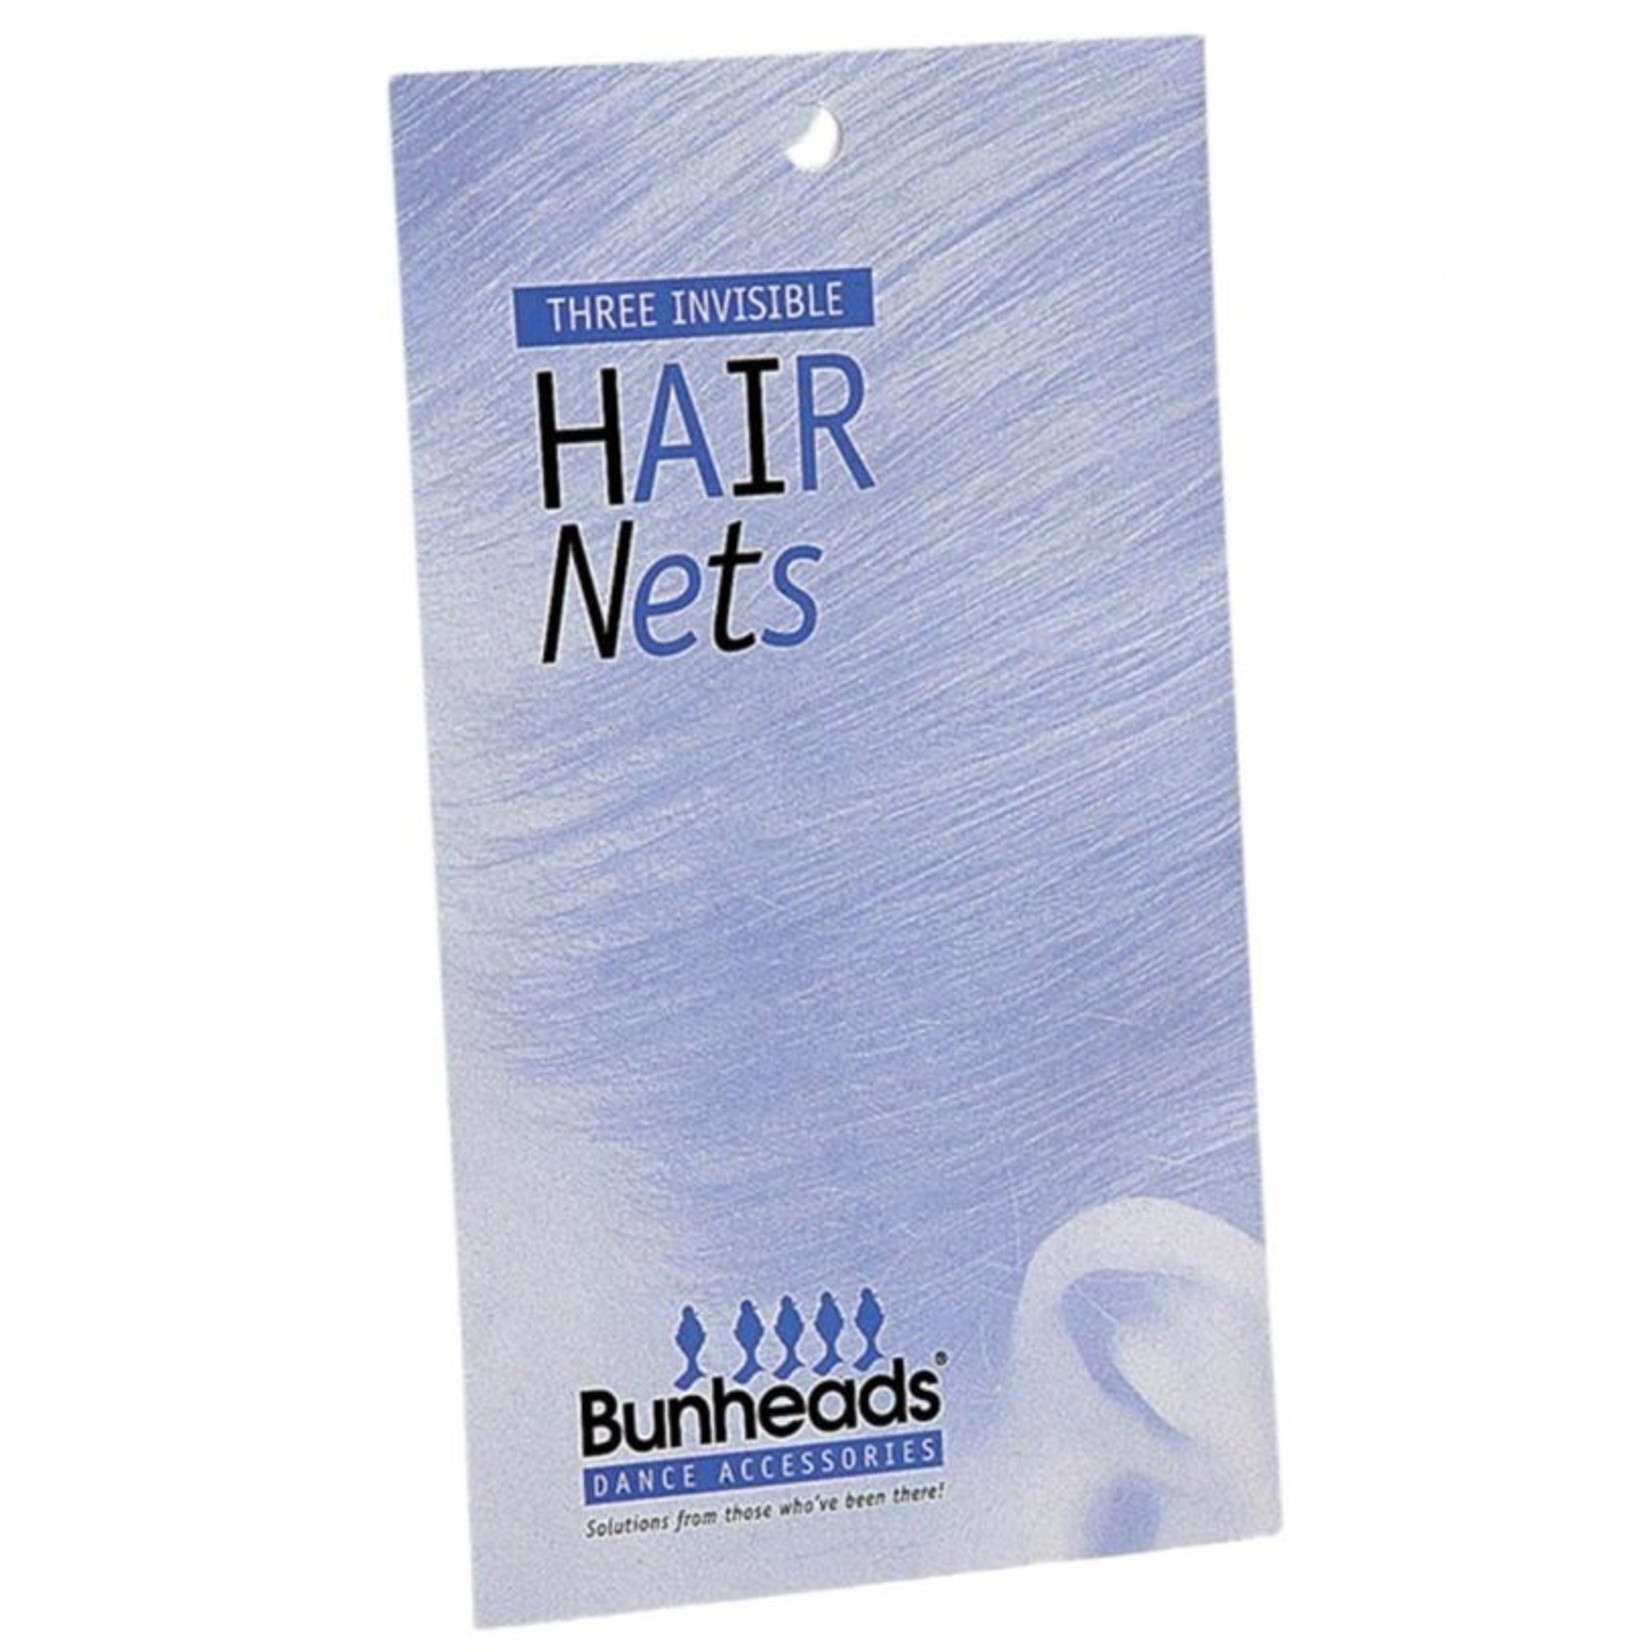 Bunheads BH425 AUBURN  HAIR NETS 3 per pack